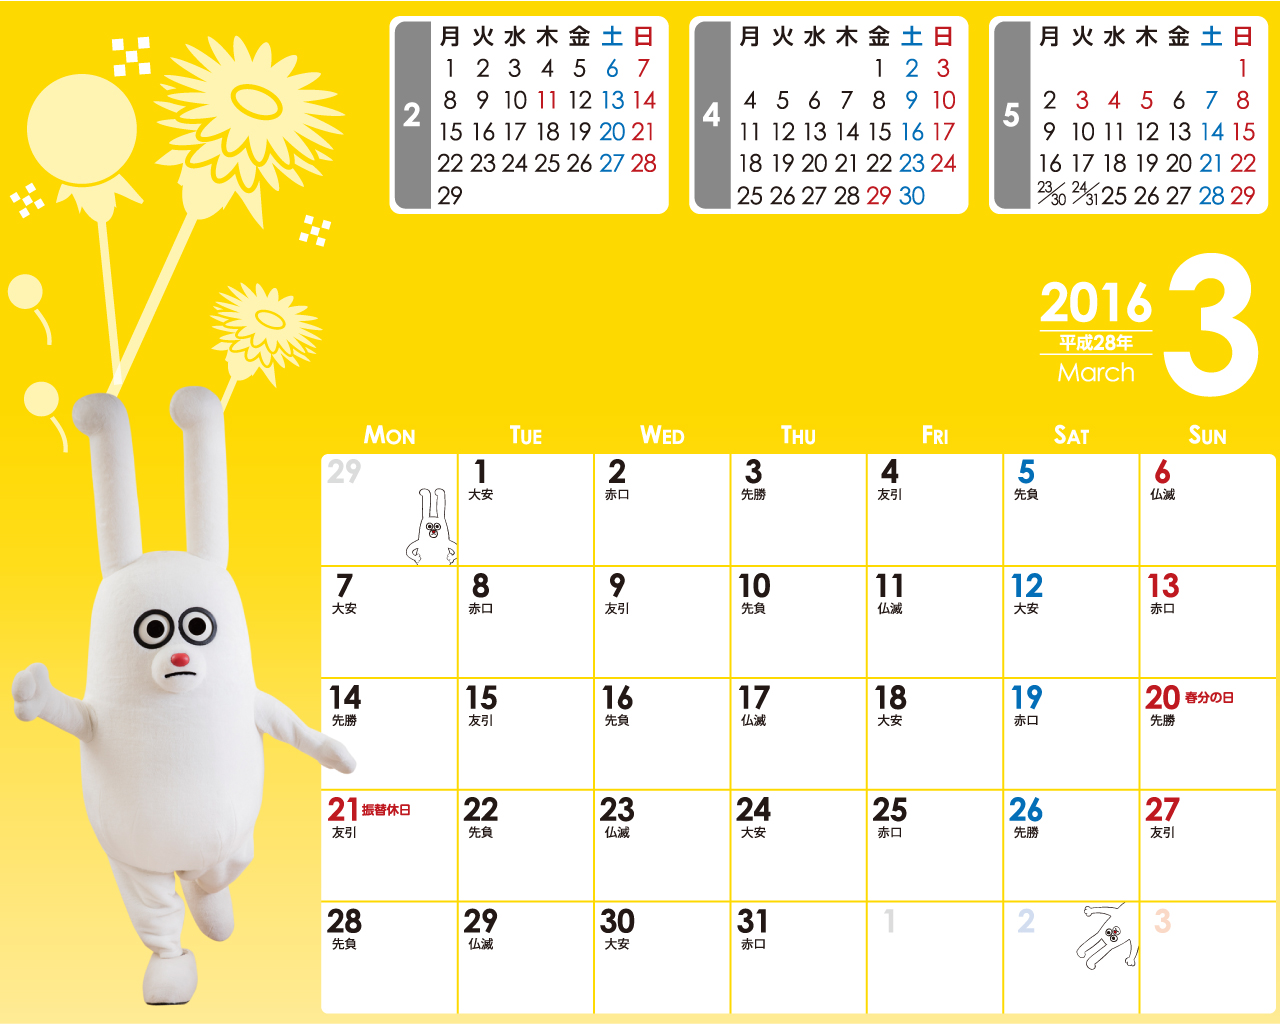 じゅういっちゃんのデジタルカレンダー16年03月 Bs11 イレブン いつでも無料放送